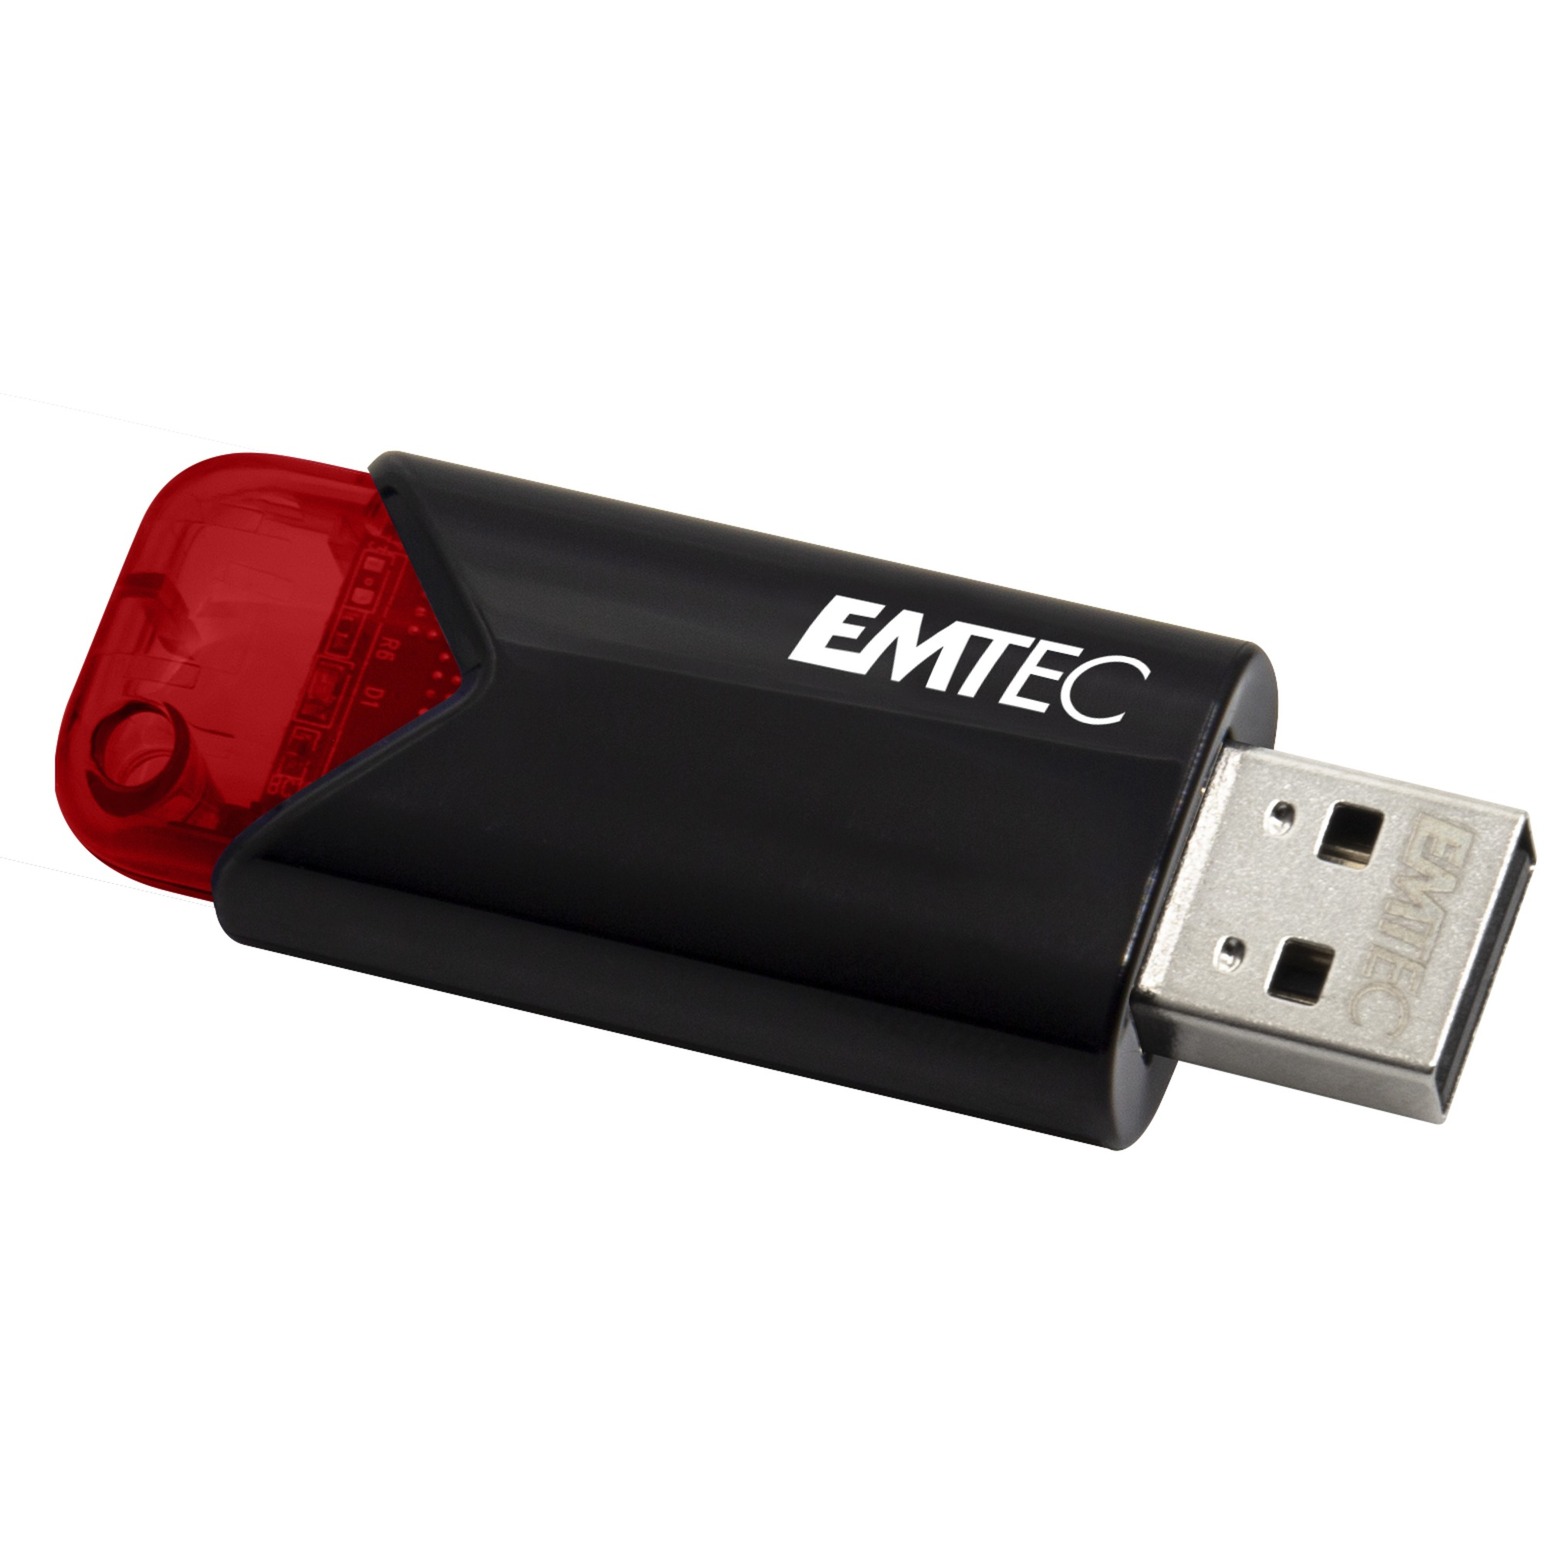 Image of Alternate - B110 Click Easy 16 GB, USB-Stick online einkaufen bei Alternate